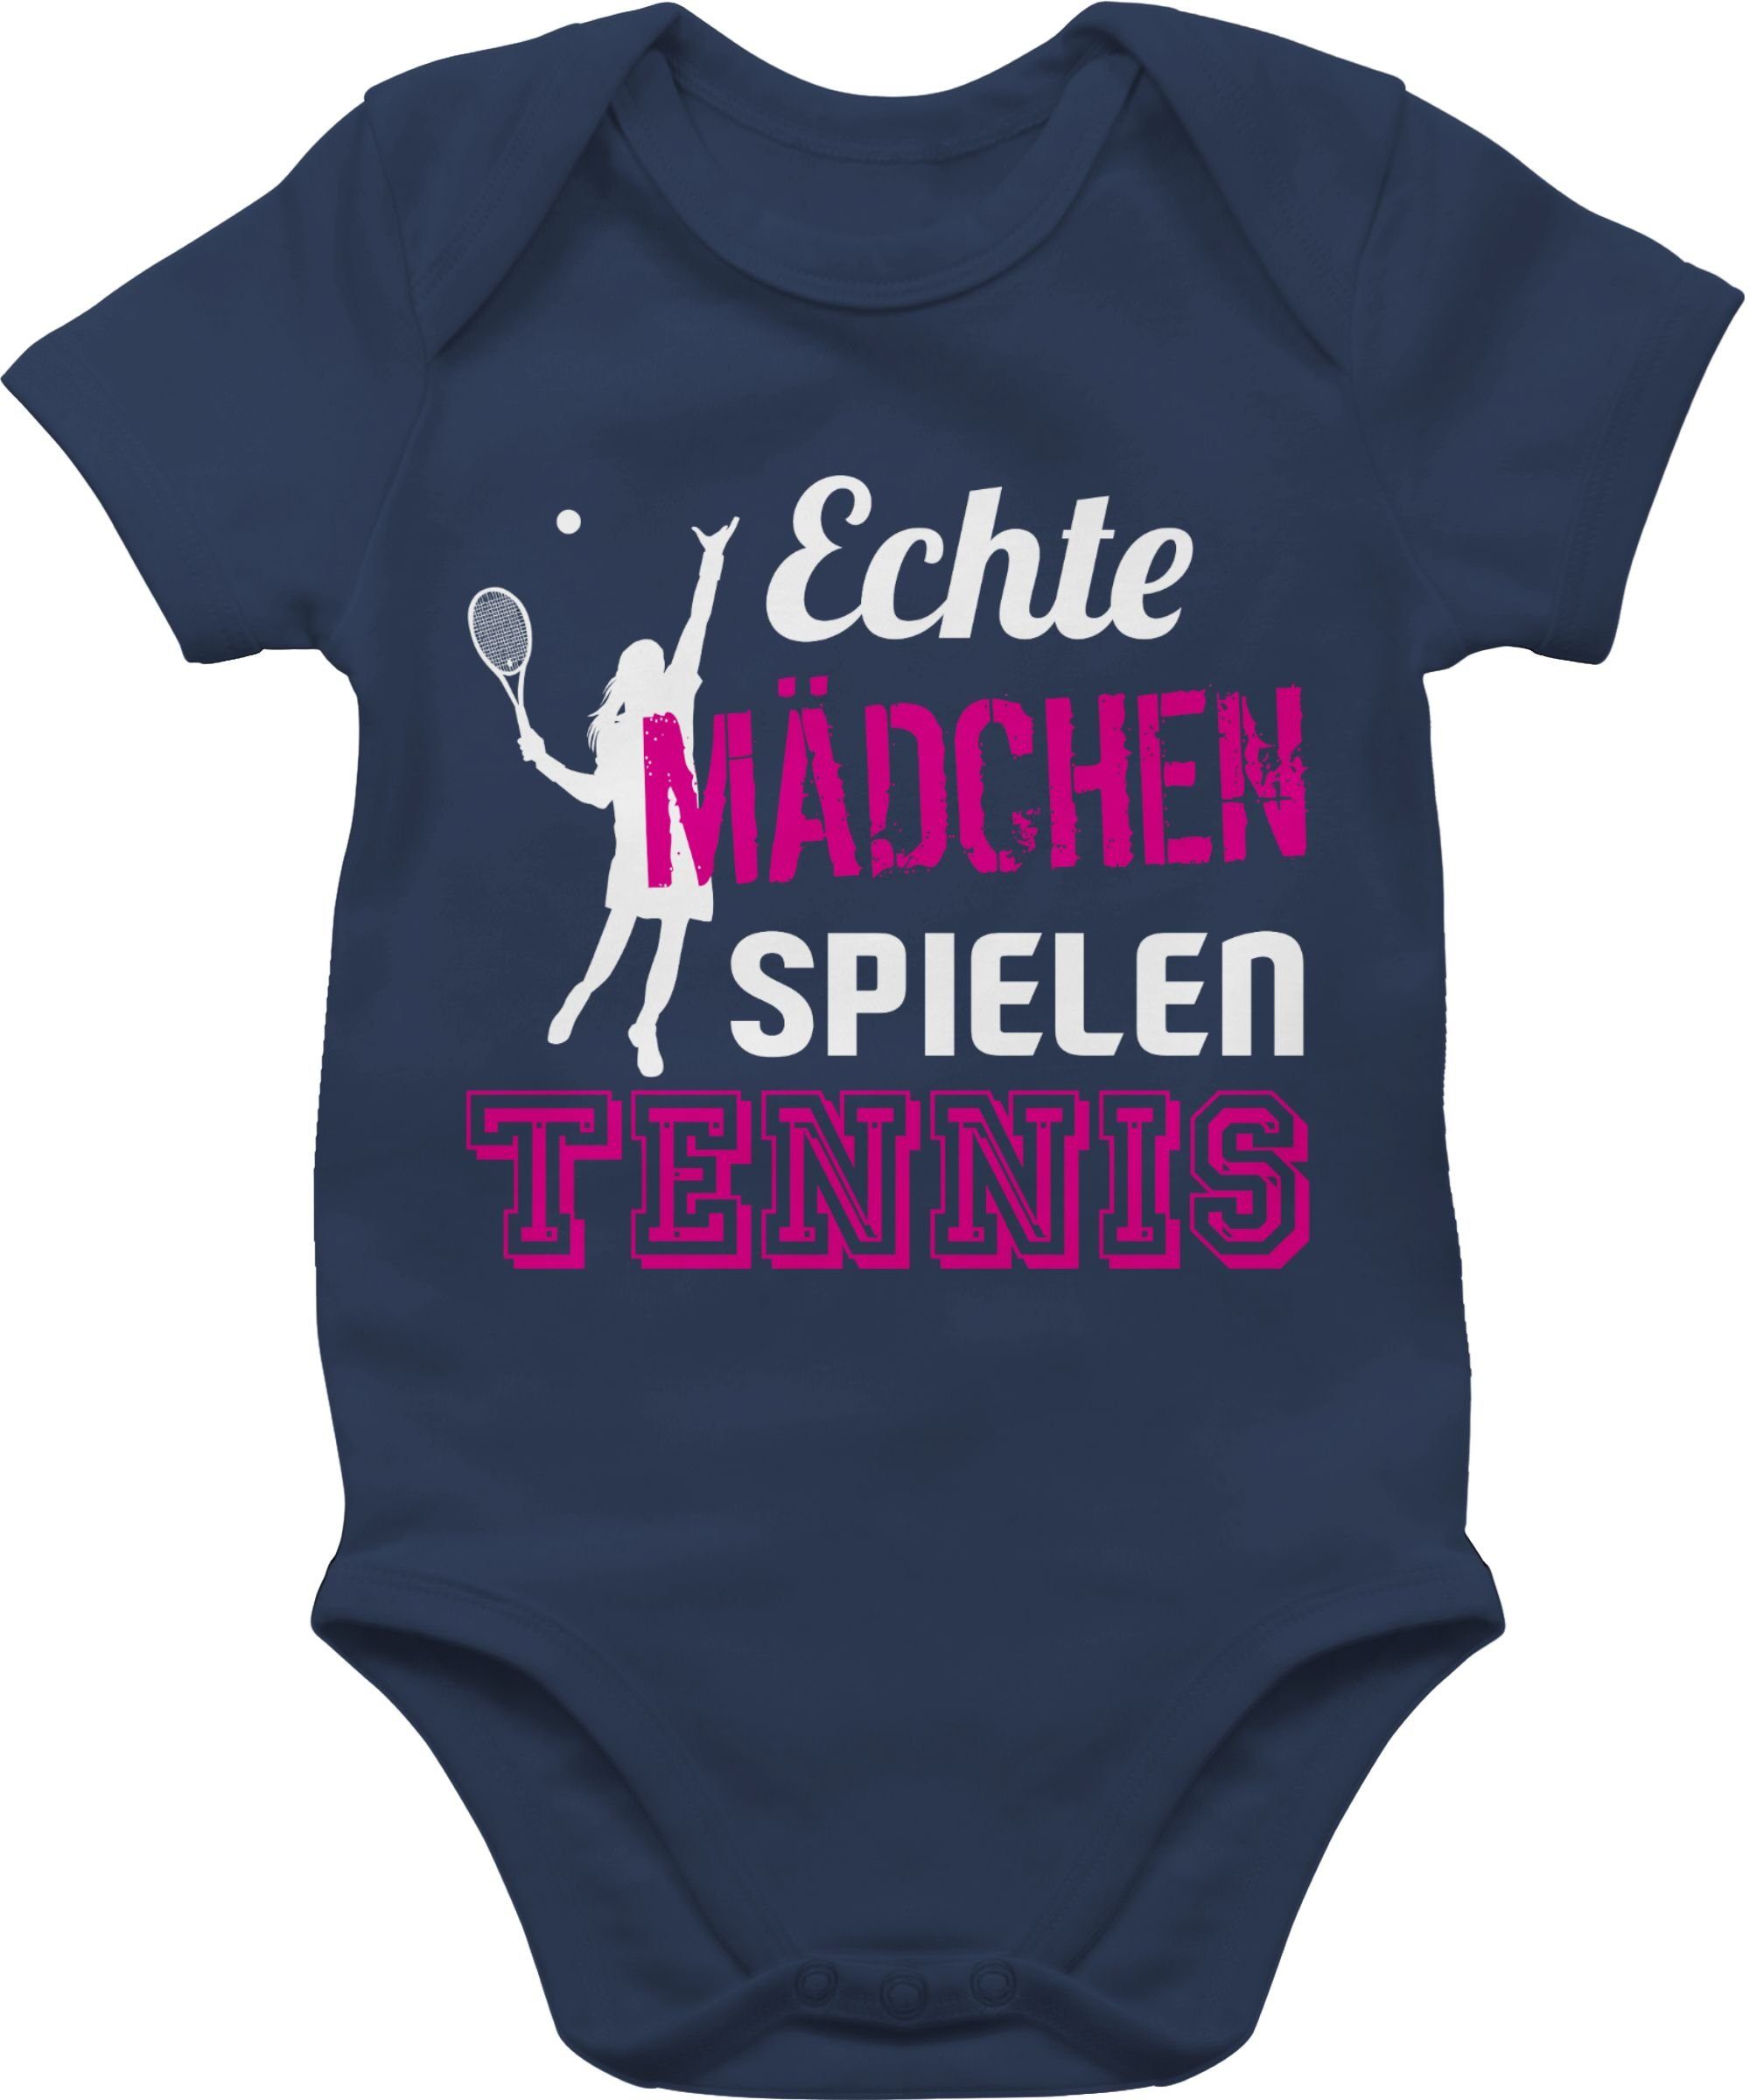 Shirtracer Shirtbody Echte Mädchen spielen Tennis Sport & Bewegung Baby 2 Navy Blau